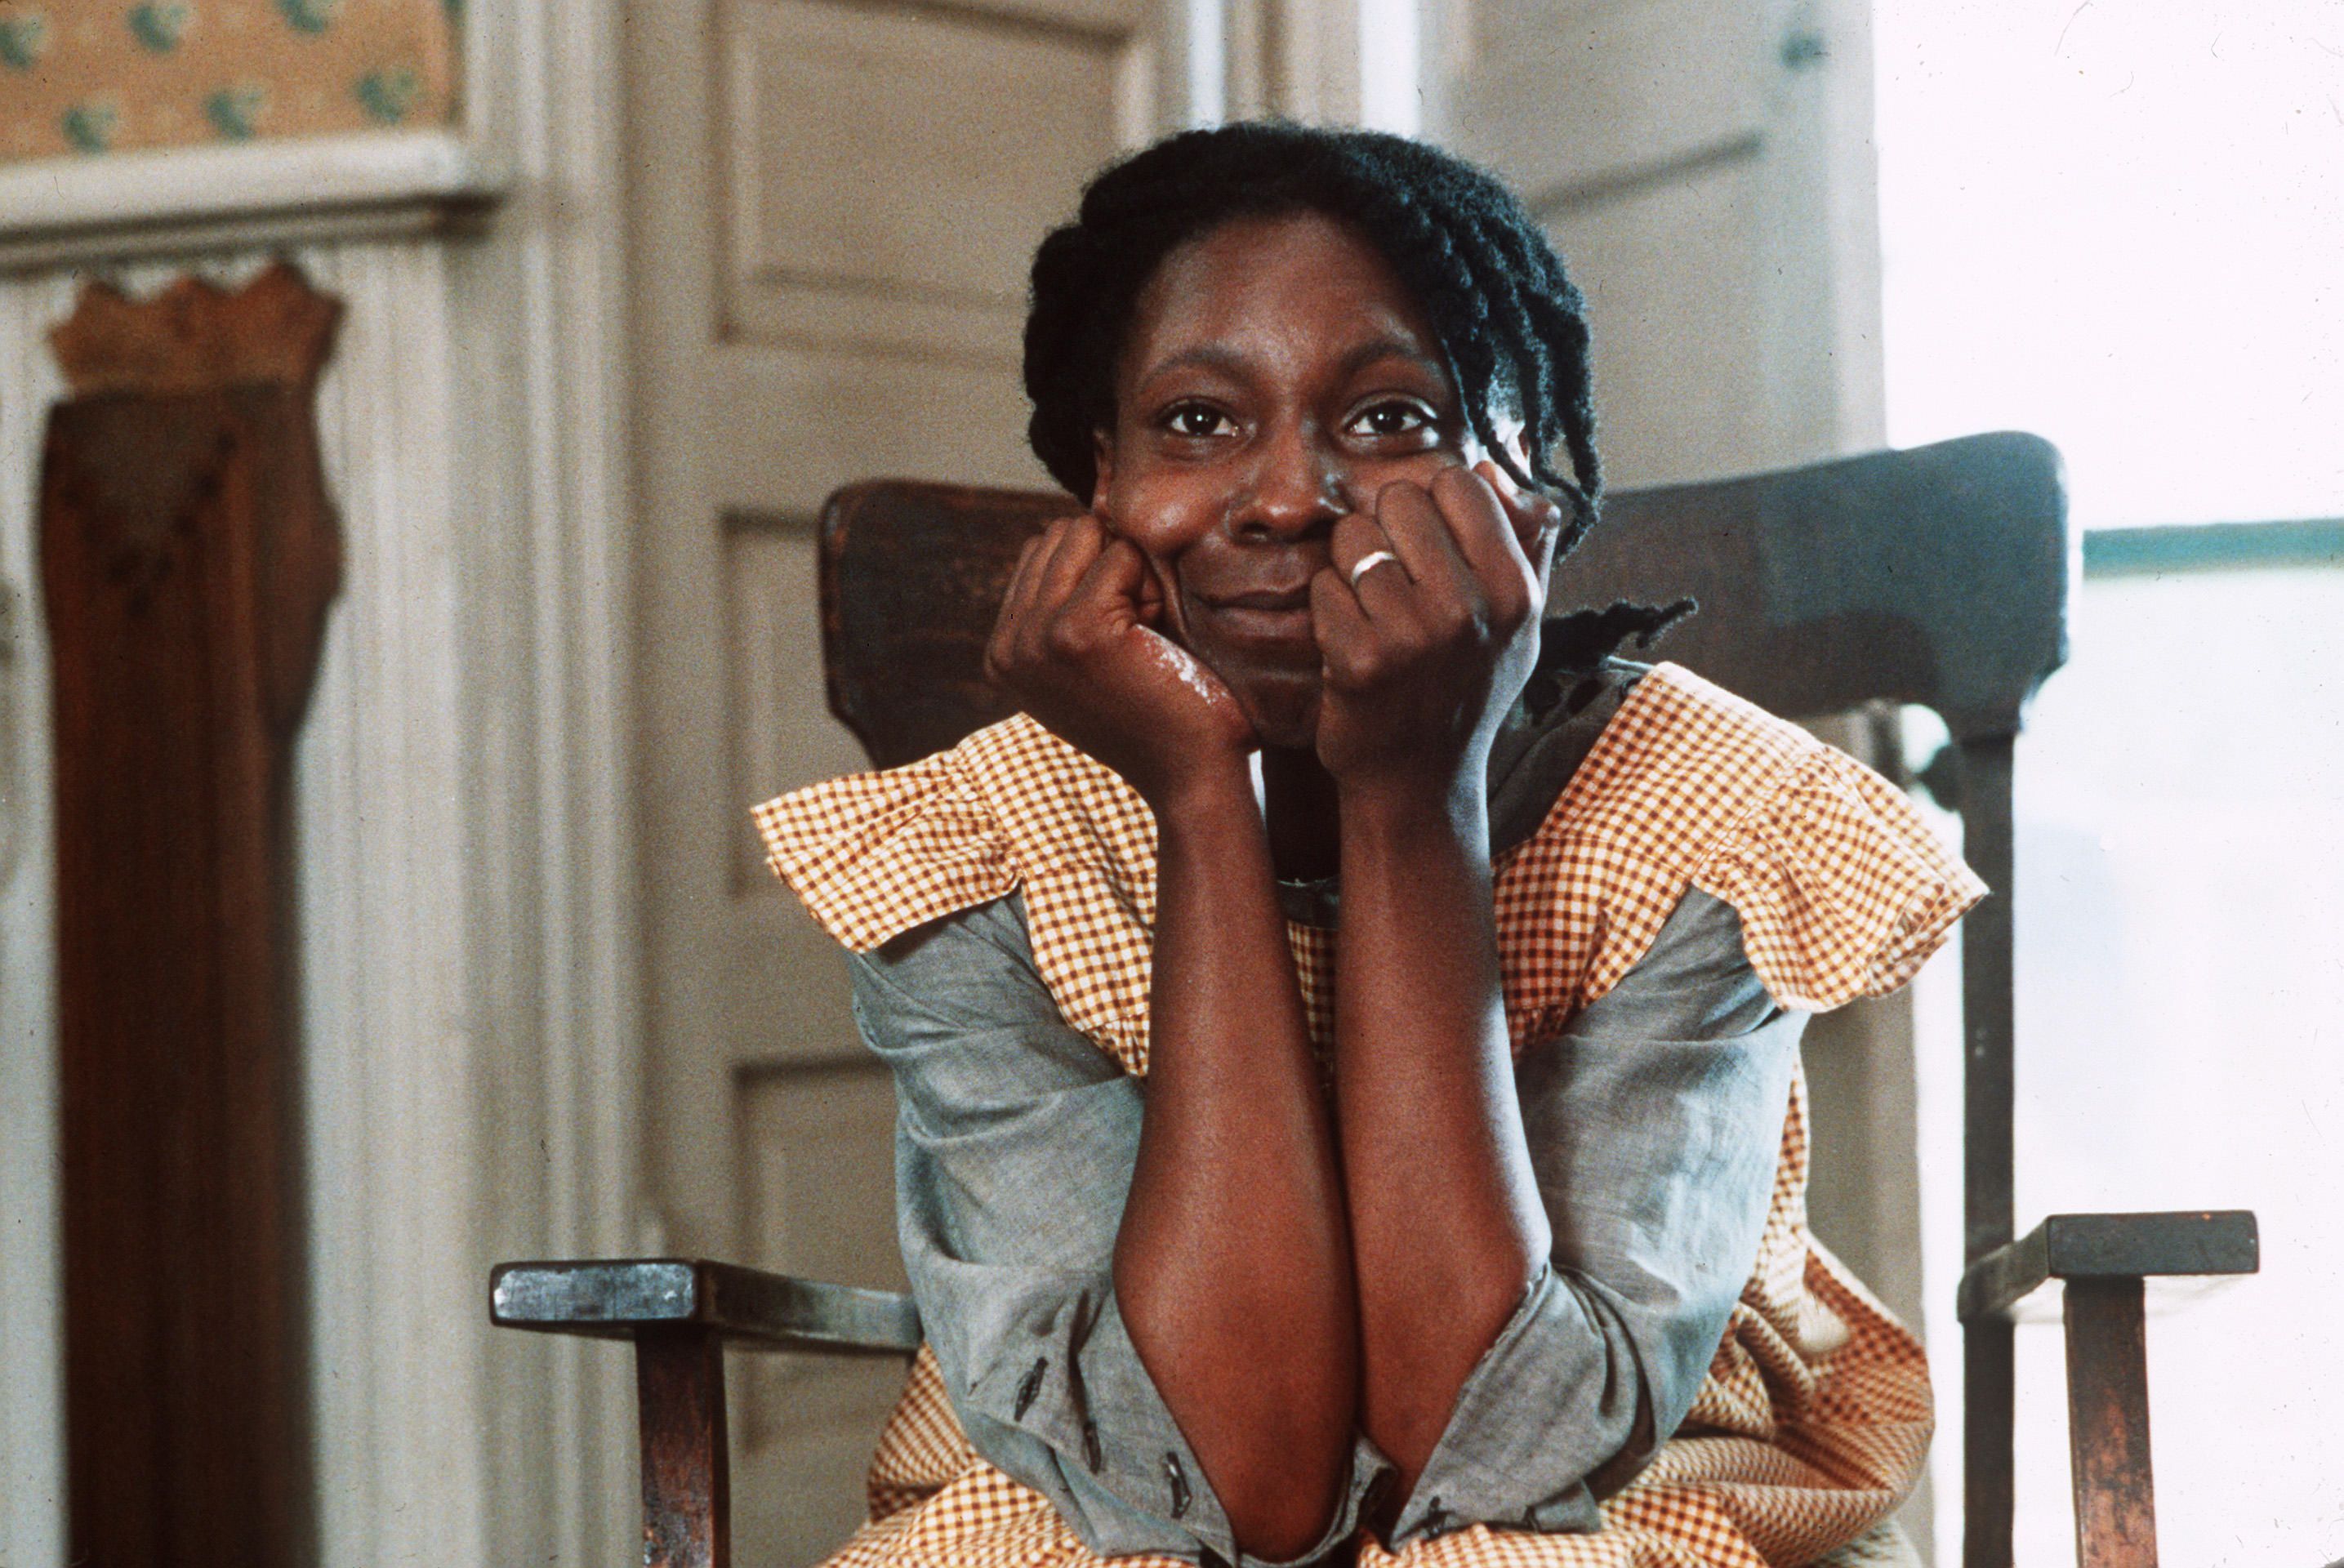 Die Farbe Lila (1985): Film-Ikone Whoopi Goldberg spielt die Afroamerikanerin Celie, die als Ehefrau an einen Farmer verkauft wird und viel Unterdrückung und Demütigung erfährt. Es dauert Jahre, bevor sie es schafft, ihrem Leben eine neue Richtung zu geben. Dieses berührende Filmdrama behandelt emotional die tiefgreifenden Probleme der Rassen- und Frauendiskriminierung.